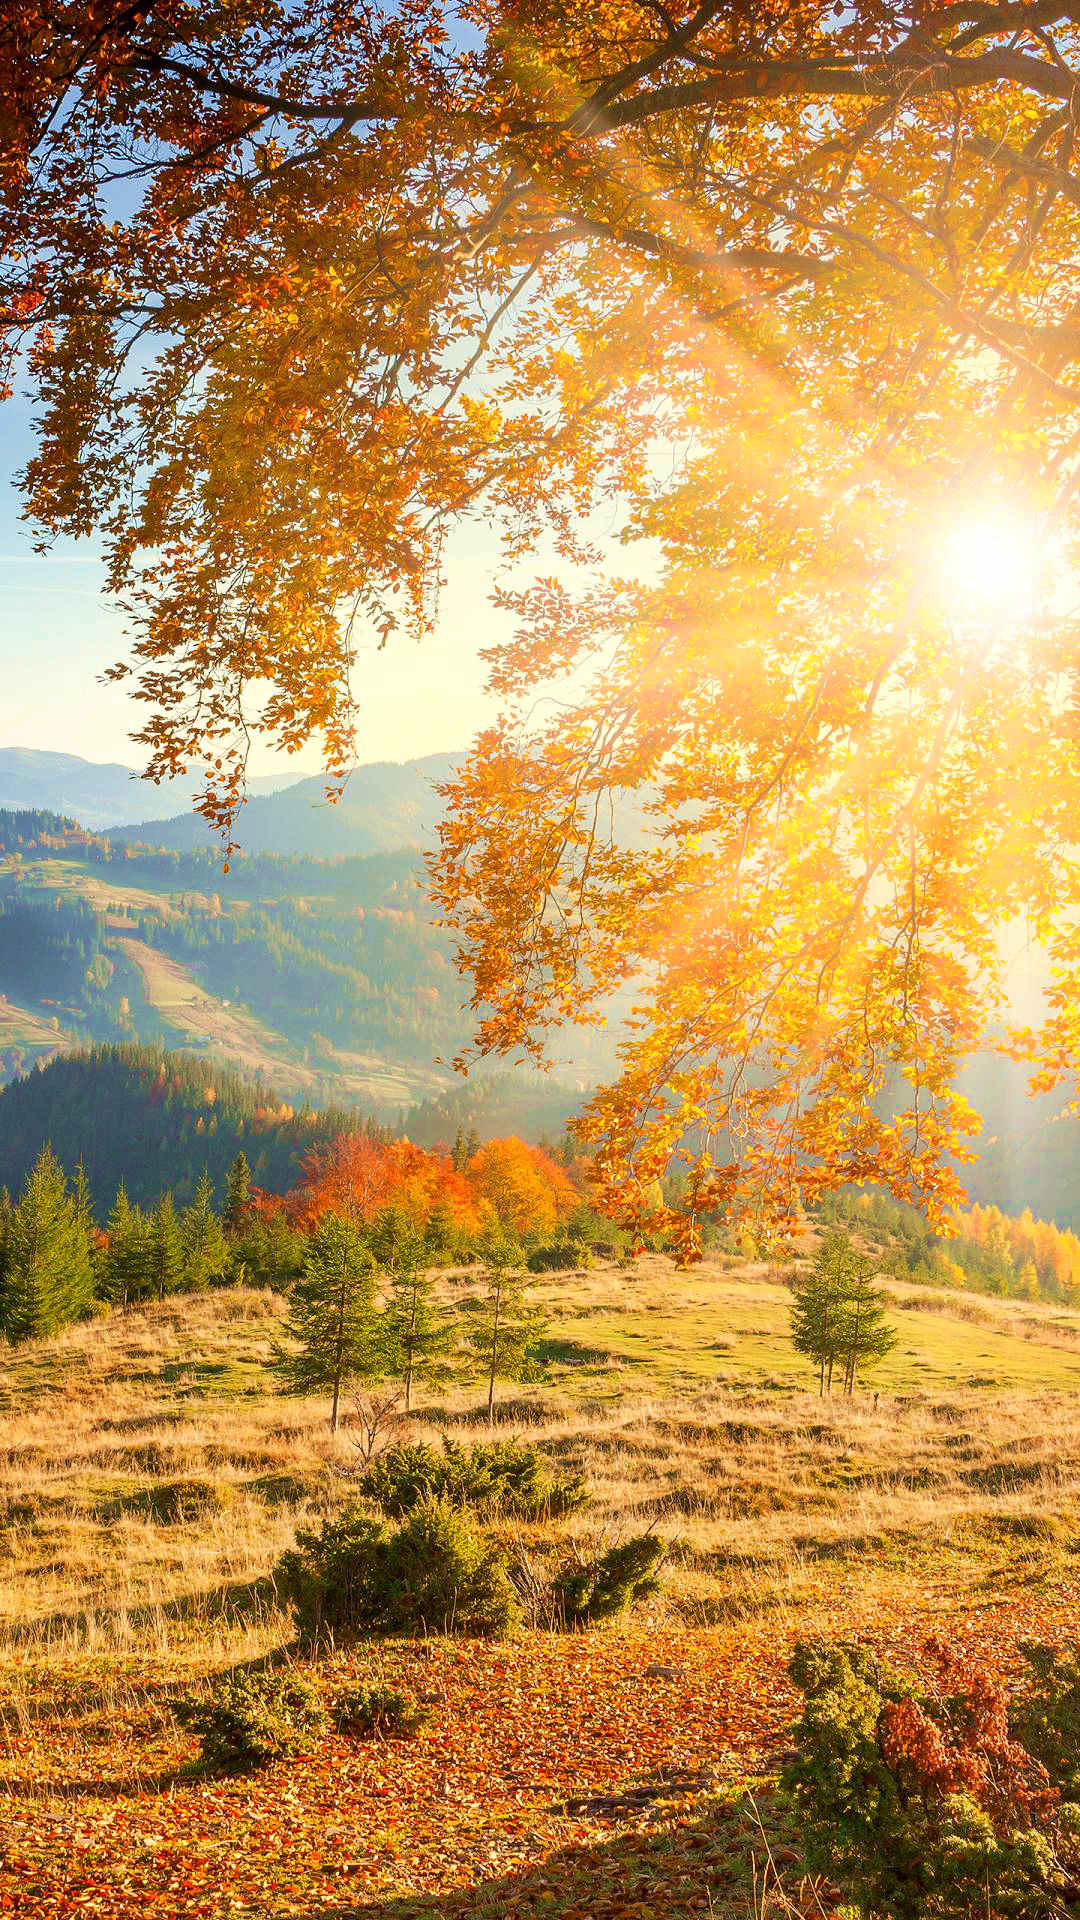 金色的阳光透过树缝洒落在草地上,林间片片秋叶黄绿半匀,秋高气爽,别